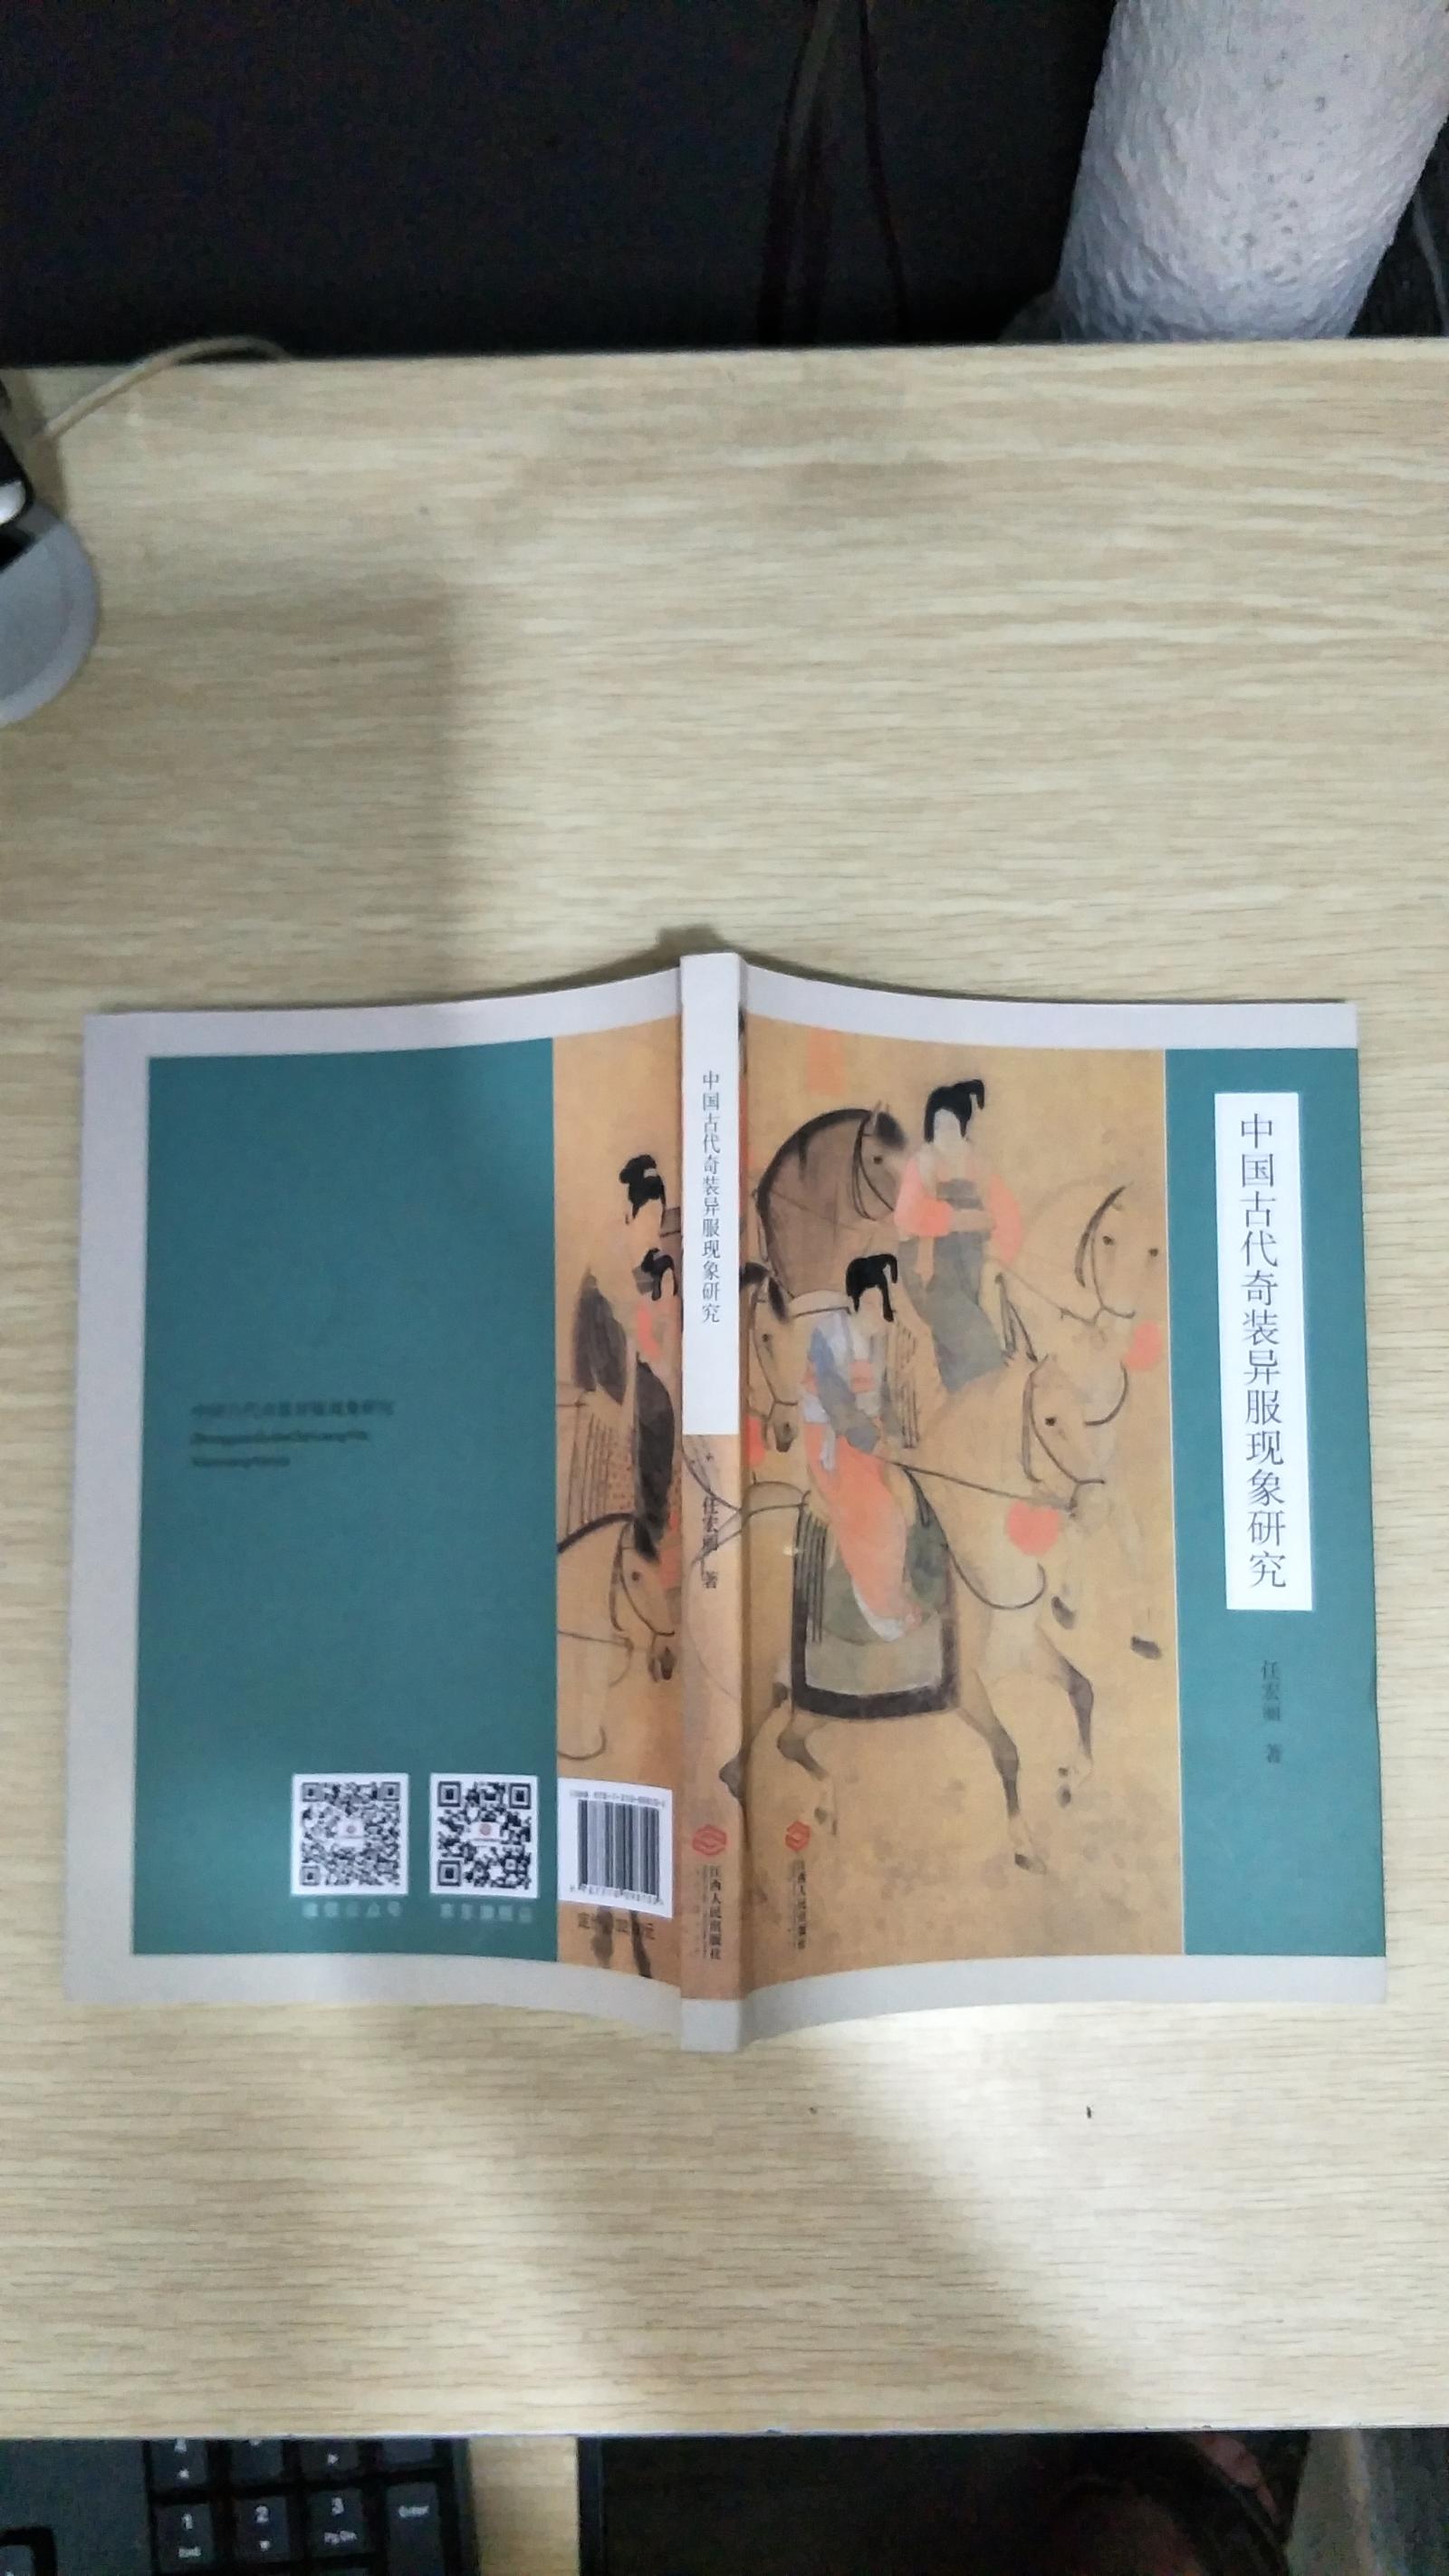 中国古代奇装异服现象研究